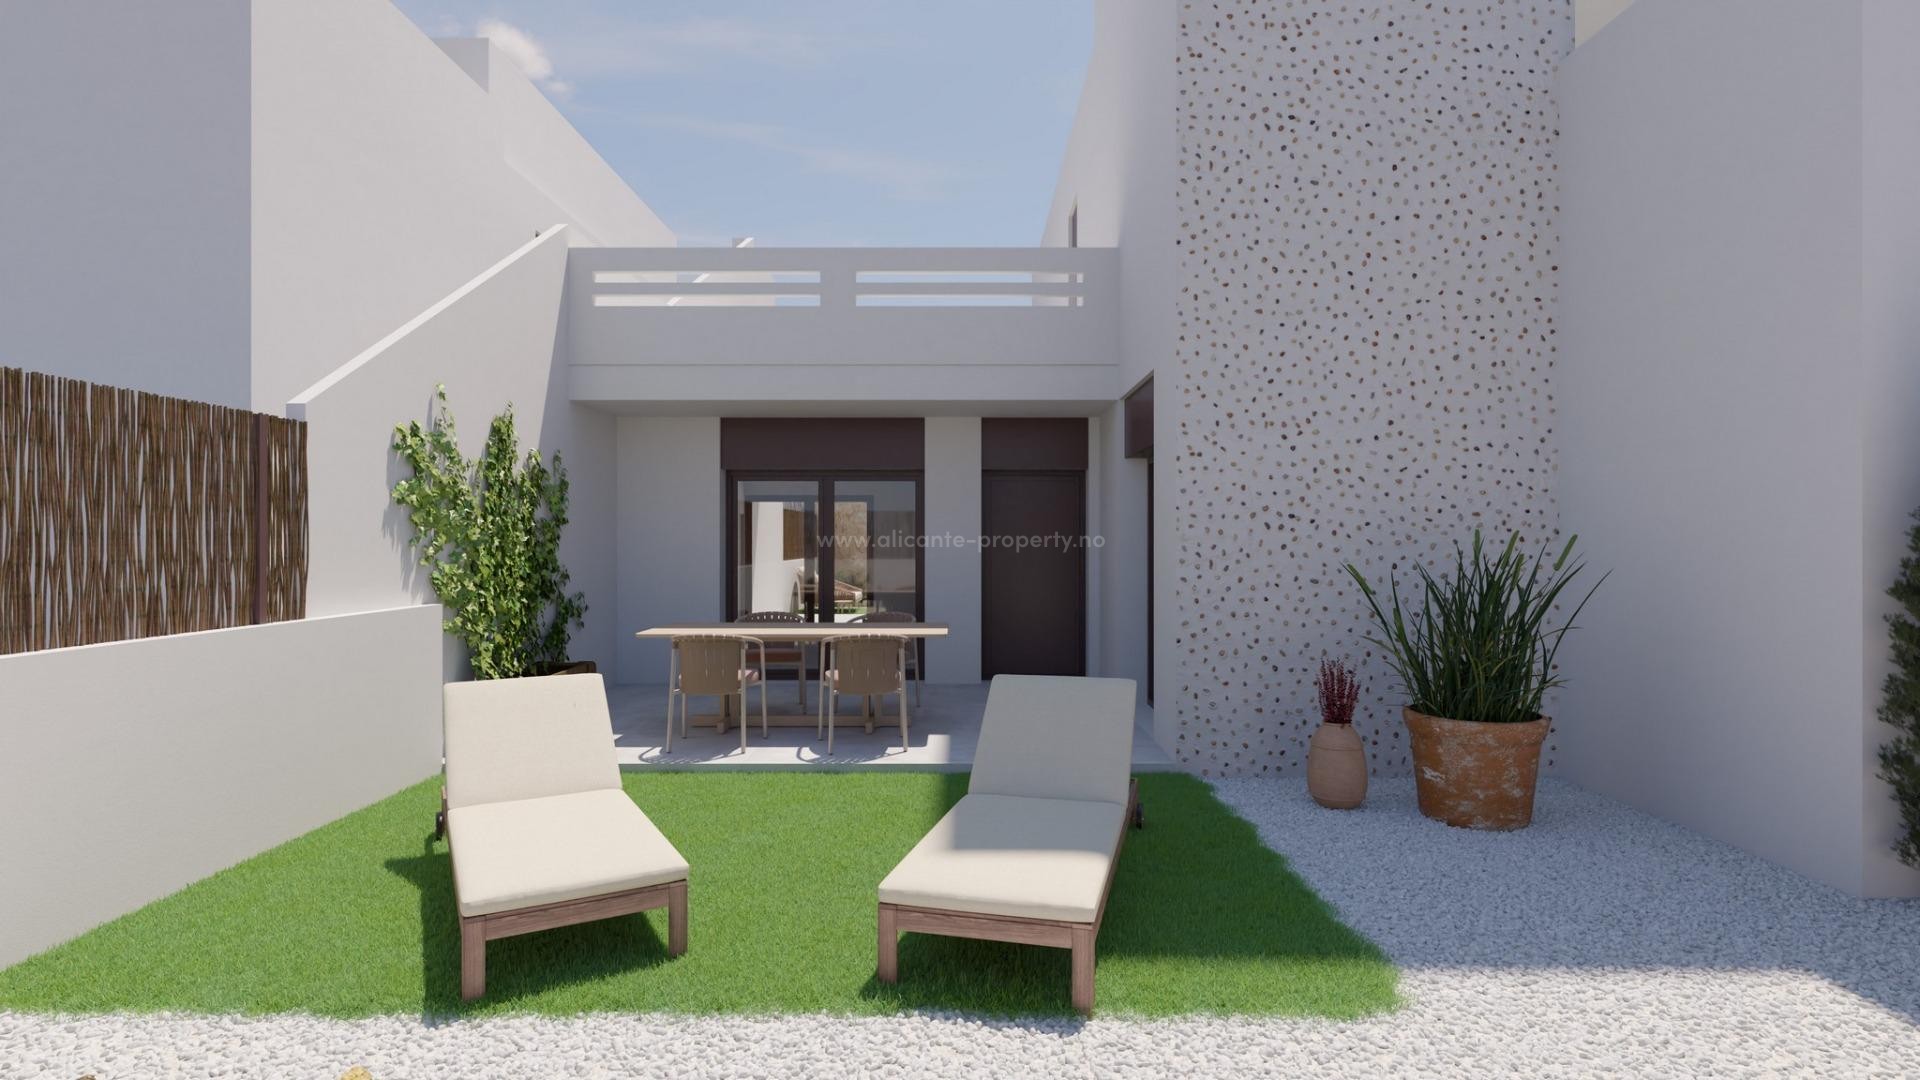 Nye bungalows/leiligheter i La Finca Golf, 3 soverom (et soverom med solarium) 2 bad, stue/spisestue med direkte utgang til romslige terrasser. Anlagt hage